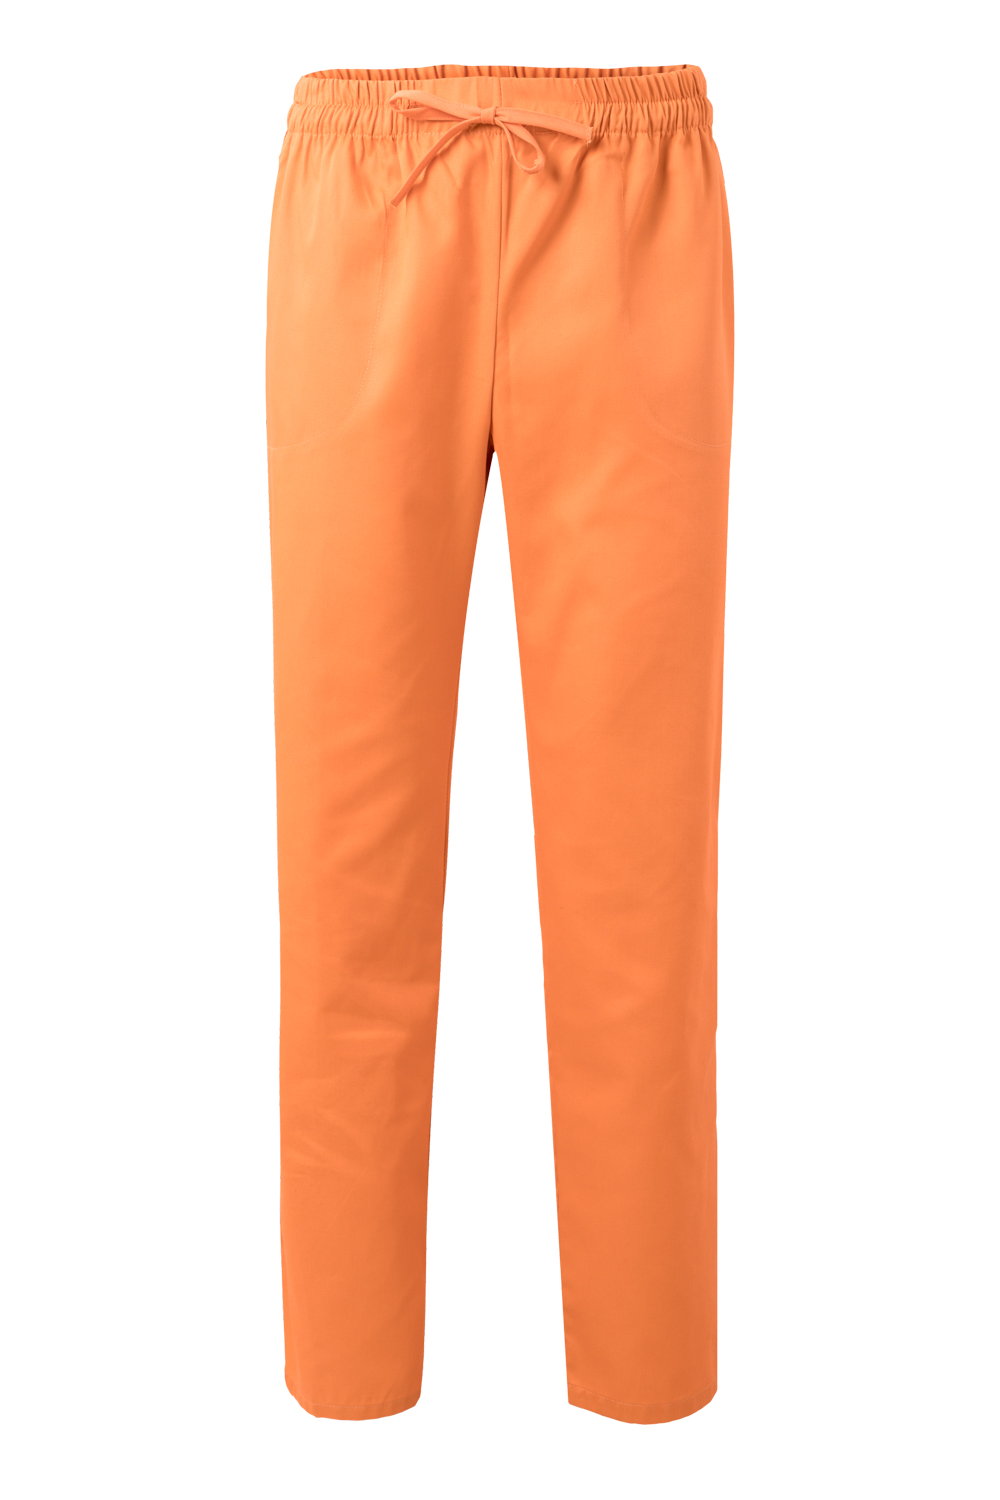 VELILLA GROUP EUROPE S.L.U. Dámske kuchárske nohavice - oranžová XS